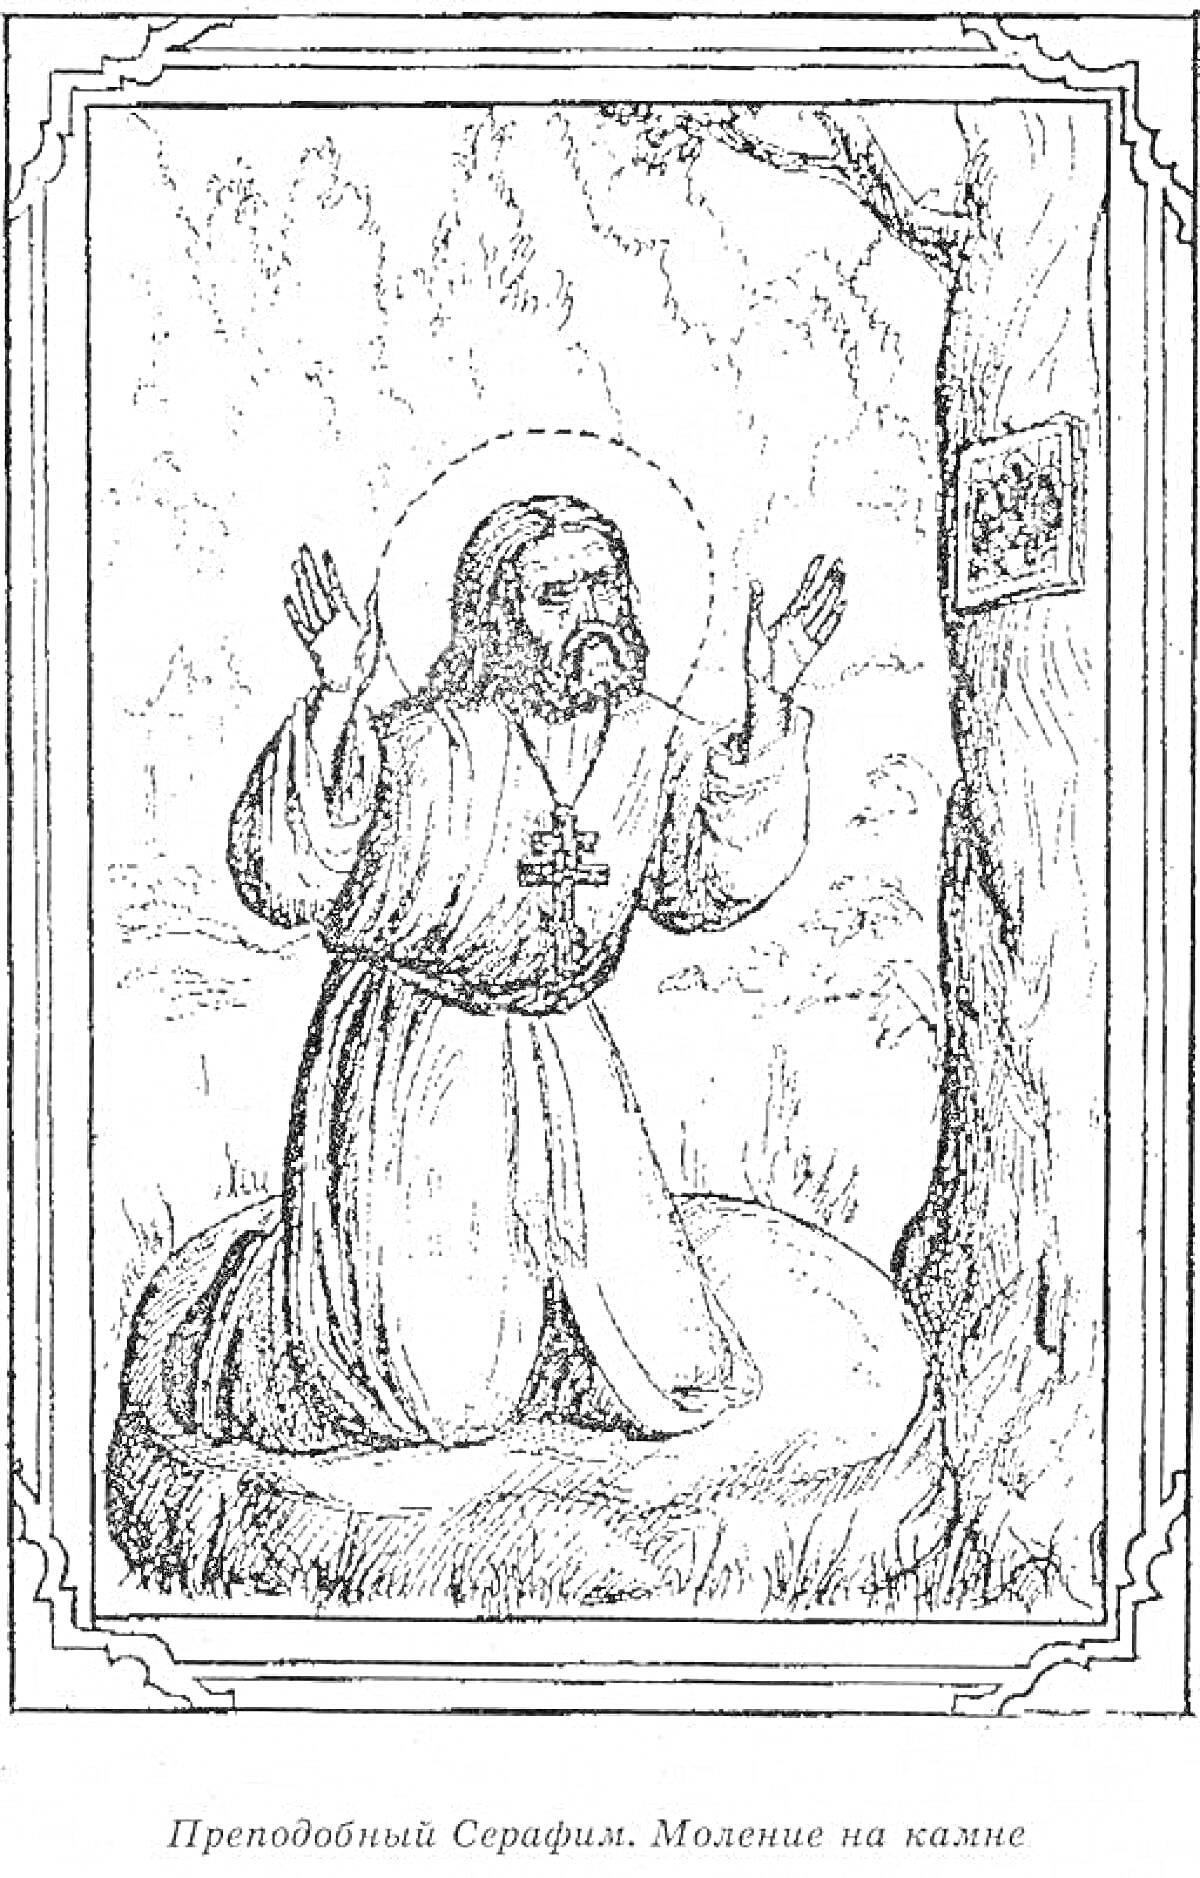 Раскраска Преподобный Серафим. Моление на камне. Мужчина в монашеской одежде с крестом молится на коленях перед иконой, прикрепленной к дереву, на фоне густого леса.